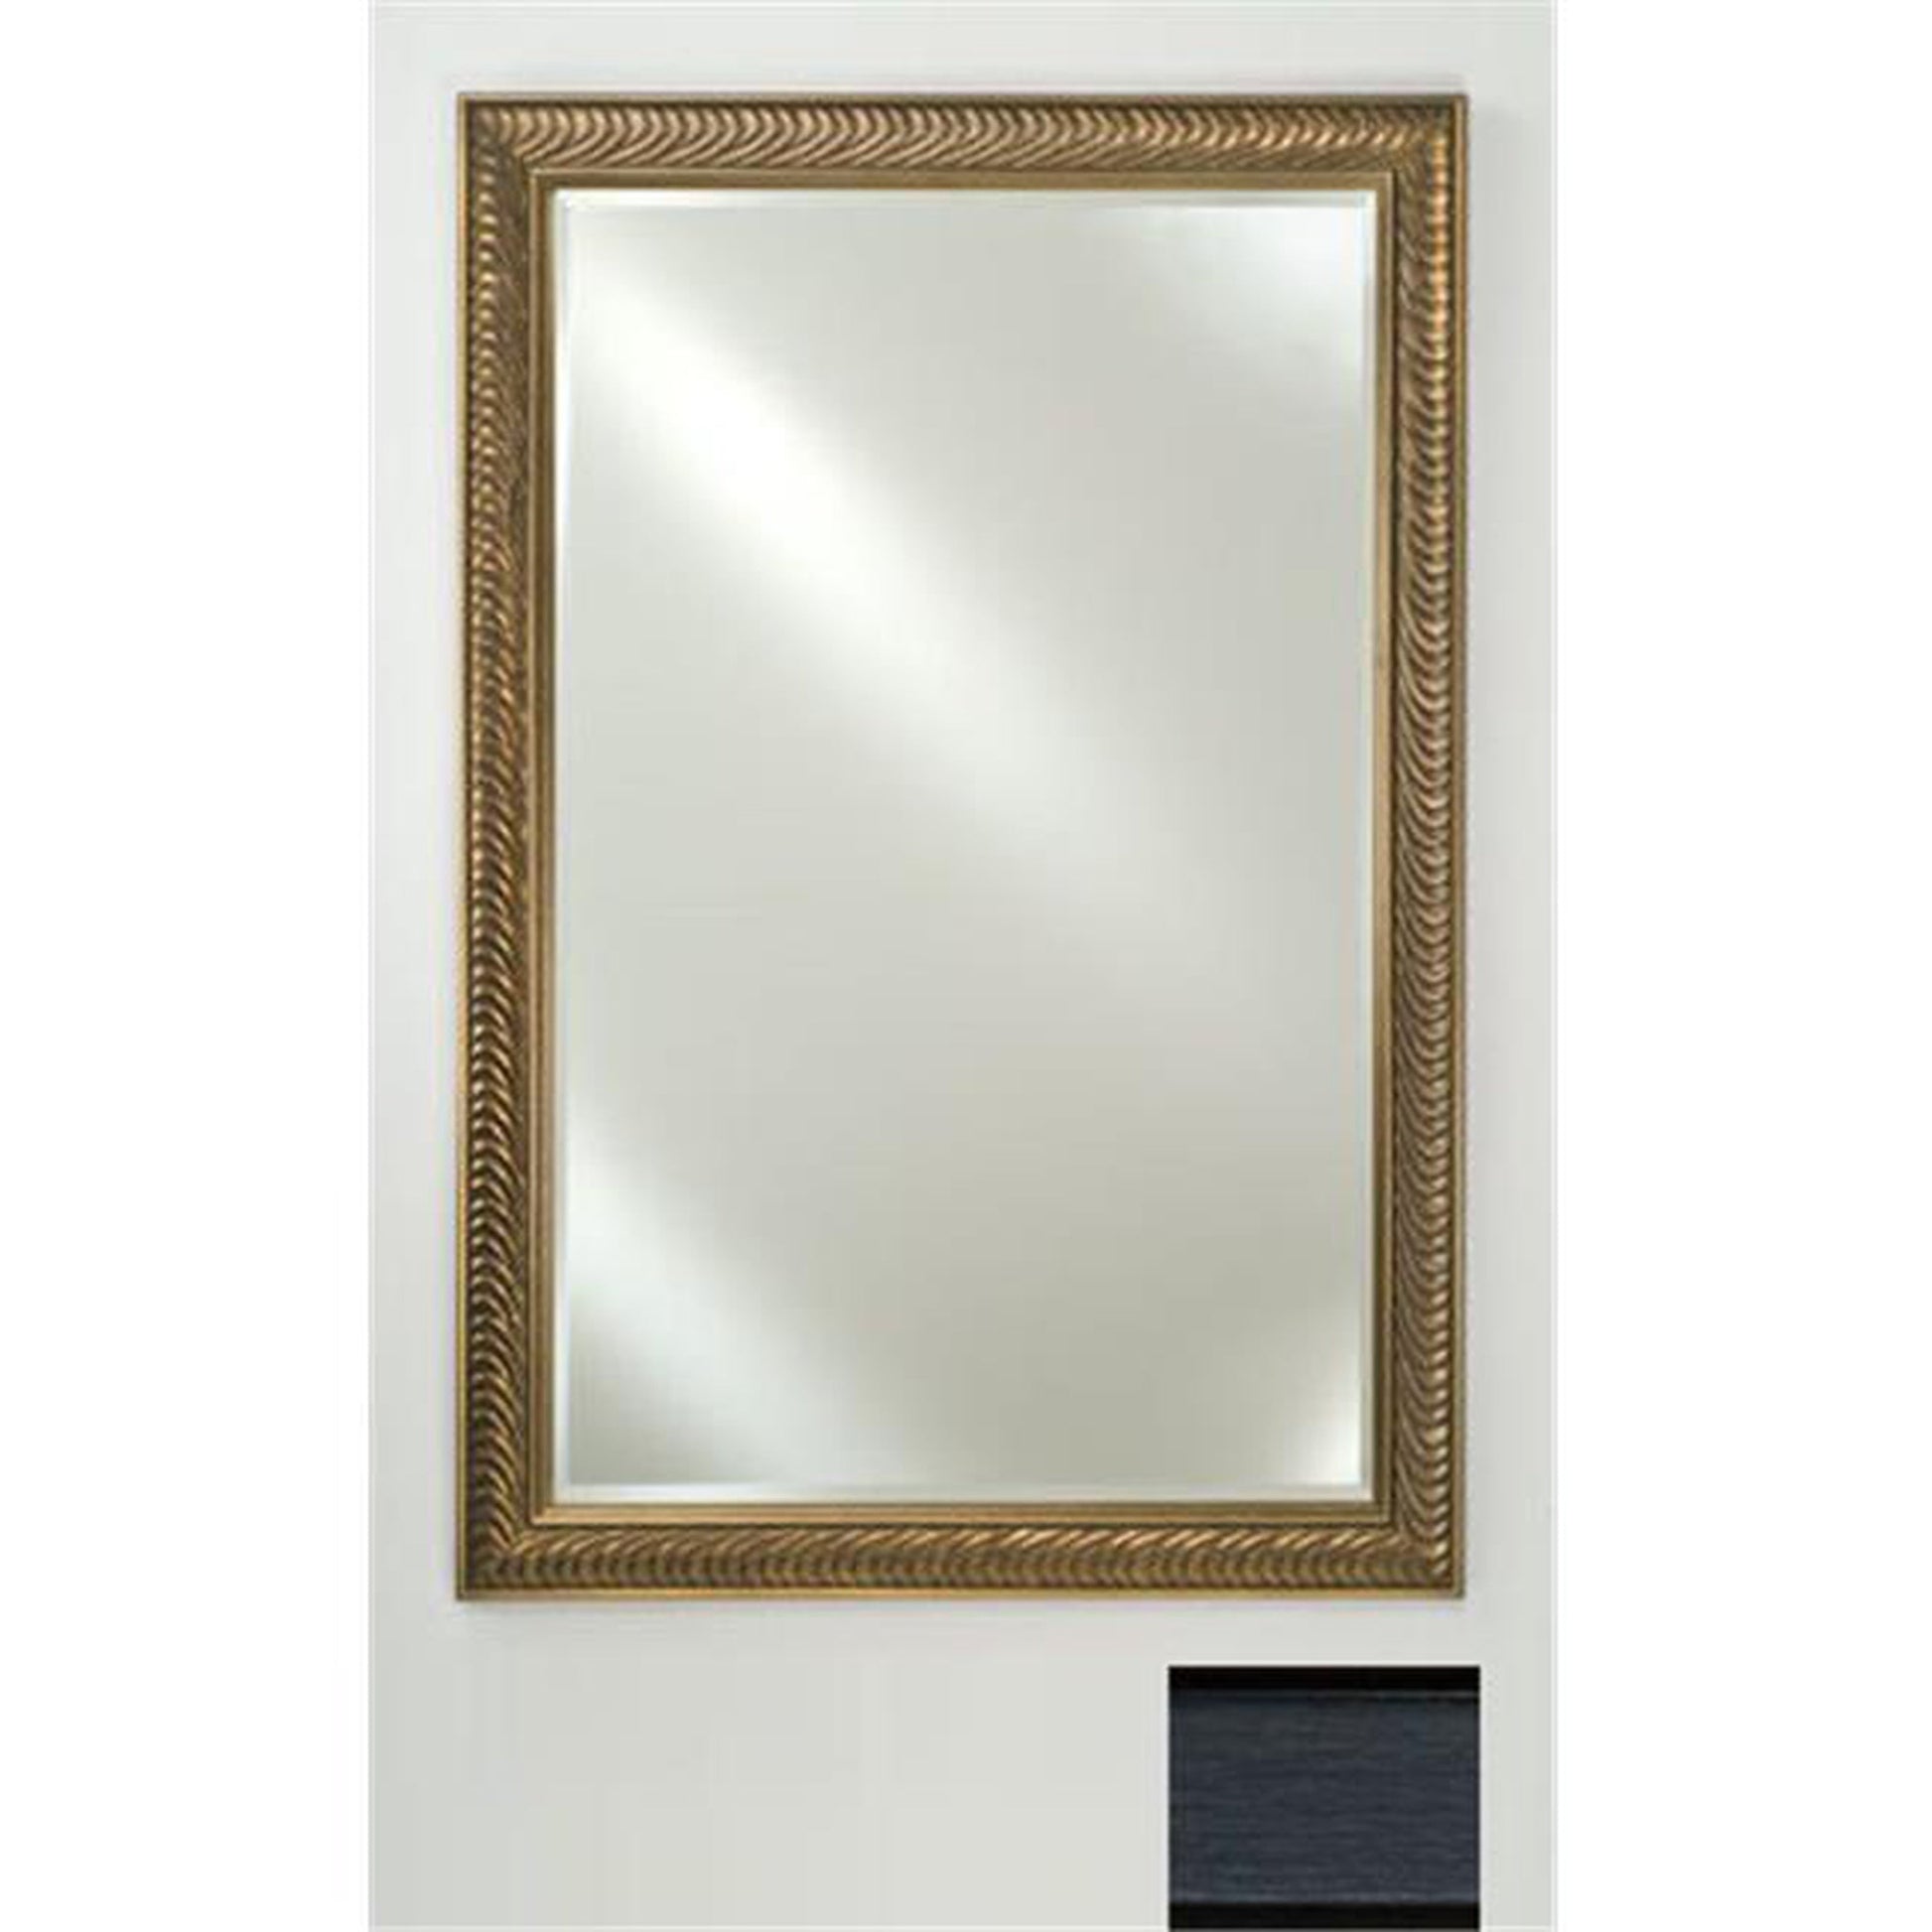 Afina Signature 16" x 22" Soho Brushed Black Framed Mirror With Beveled Edge